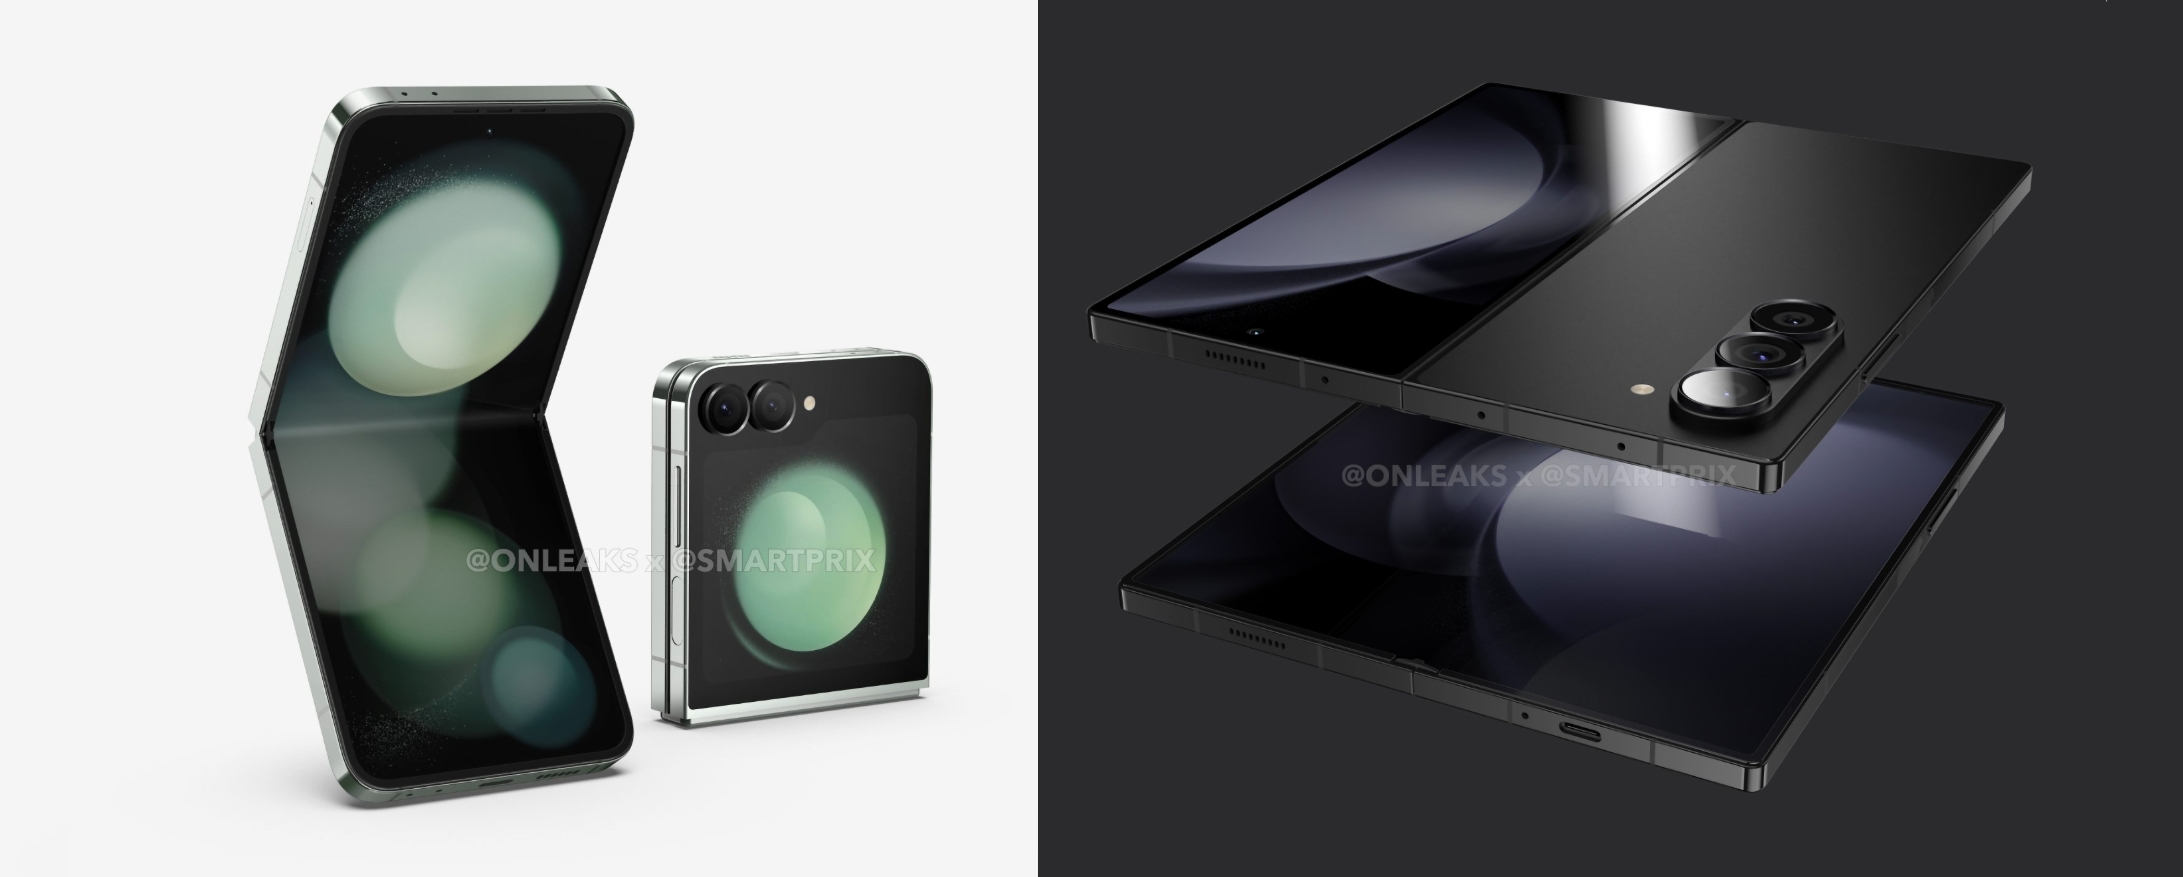 Informator ujawnił, w jakich kolorach dostępne będą składane smartfony Samsung Galaxy Fold 6 i Galaxy Flip 6.